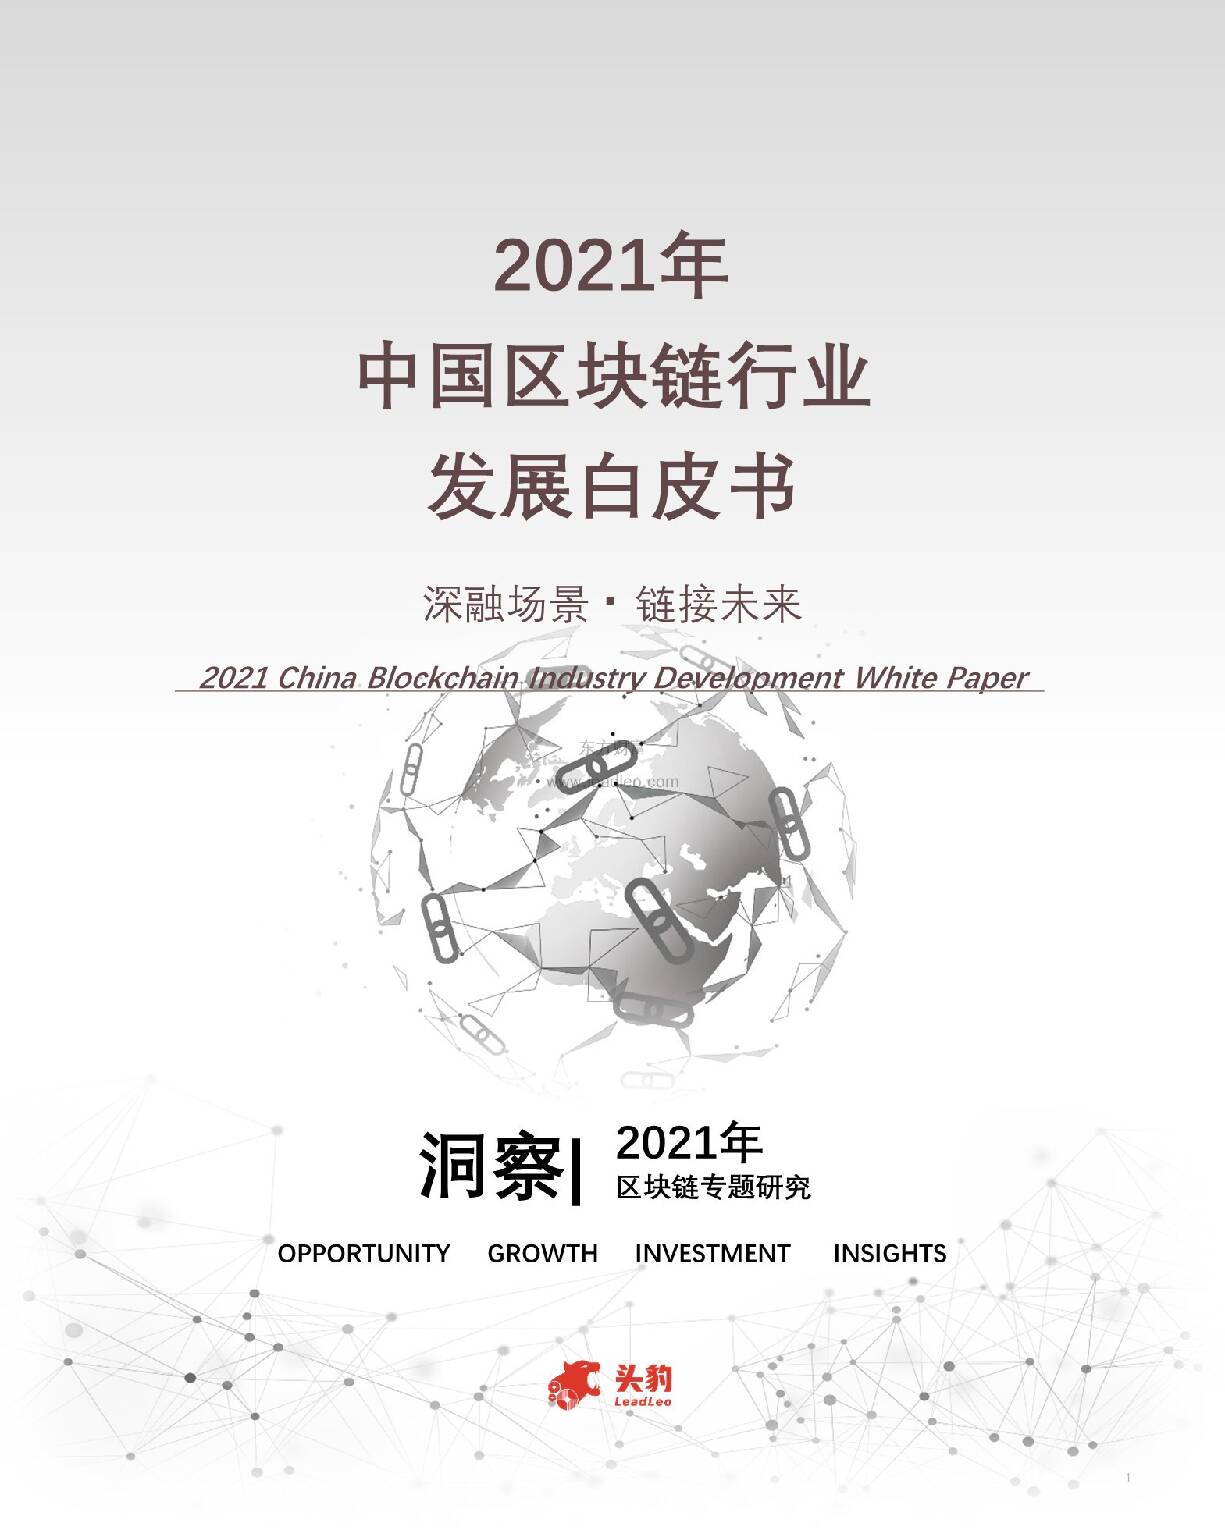 2021年中国区块链行业发展白皮书 头豹研究院 2021-10-21